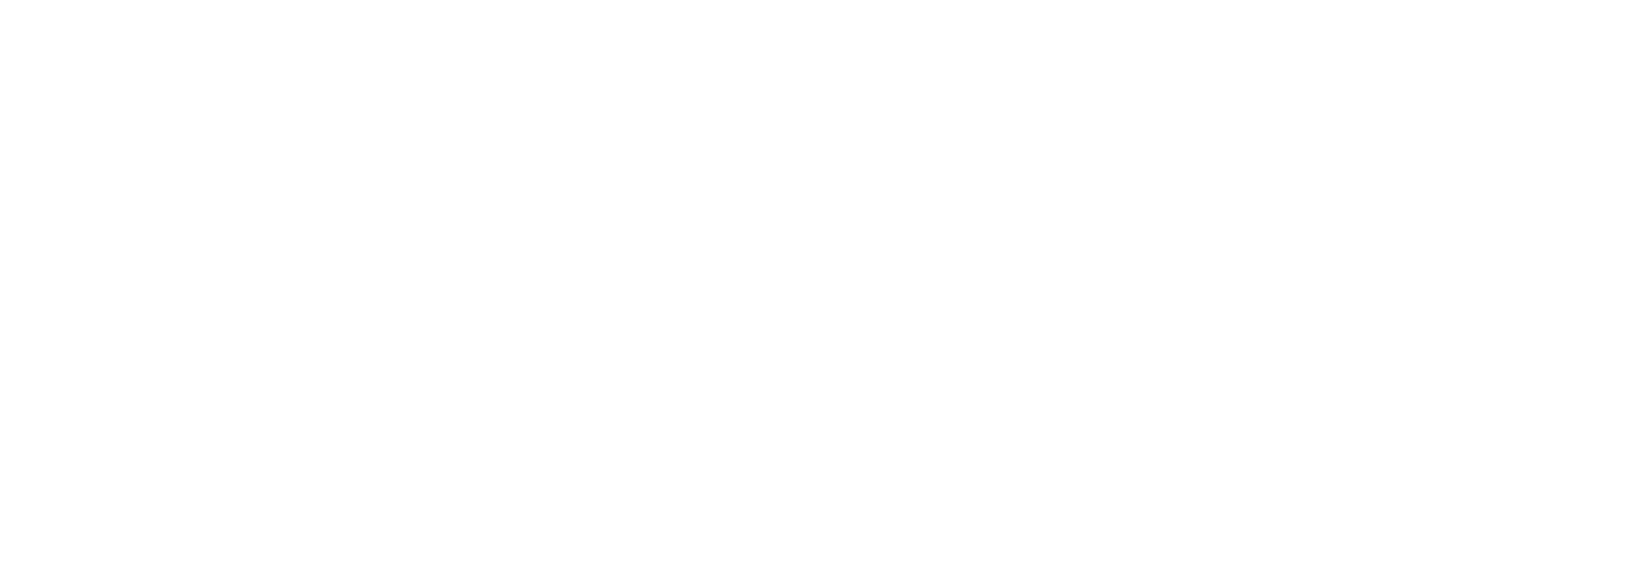 Digital Marketer logo